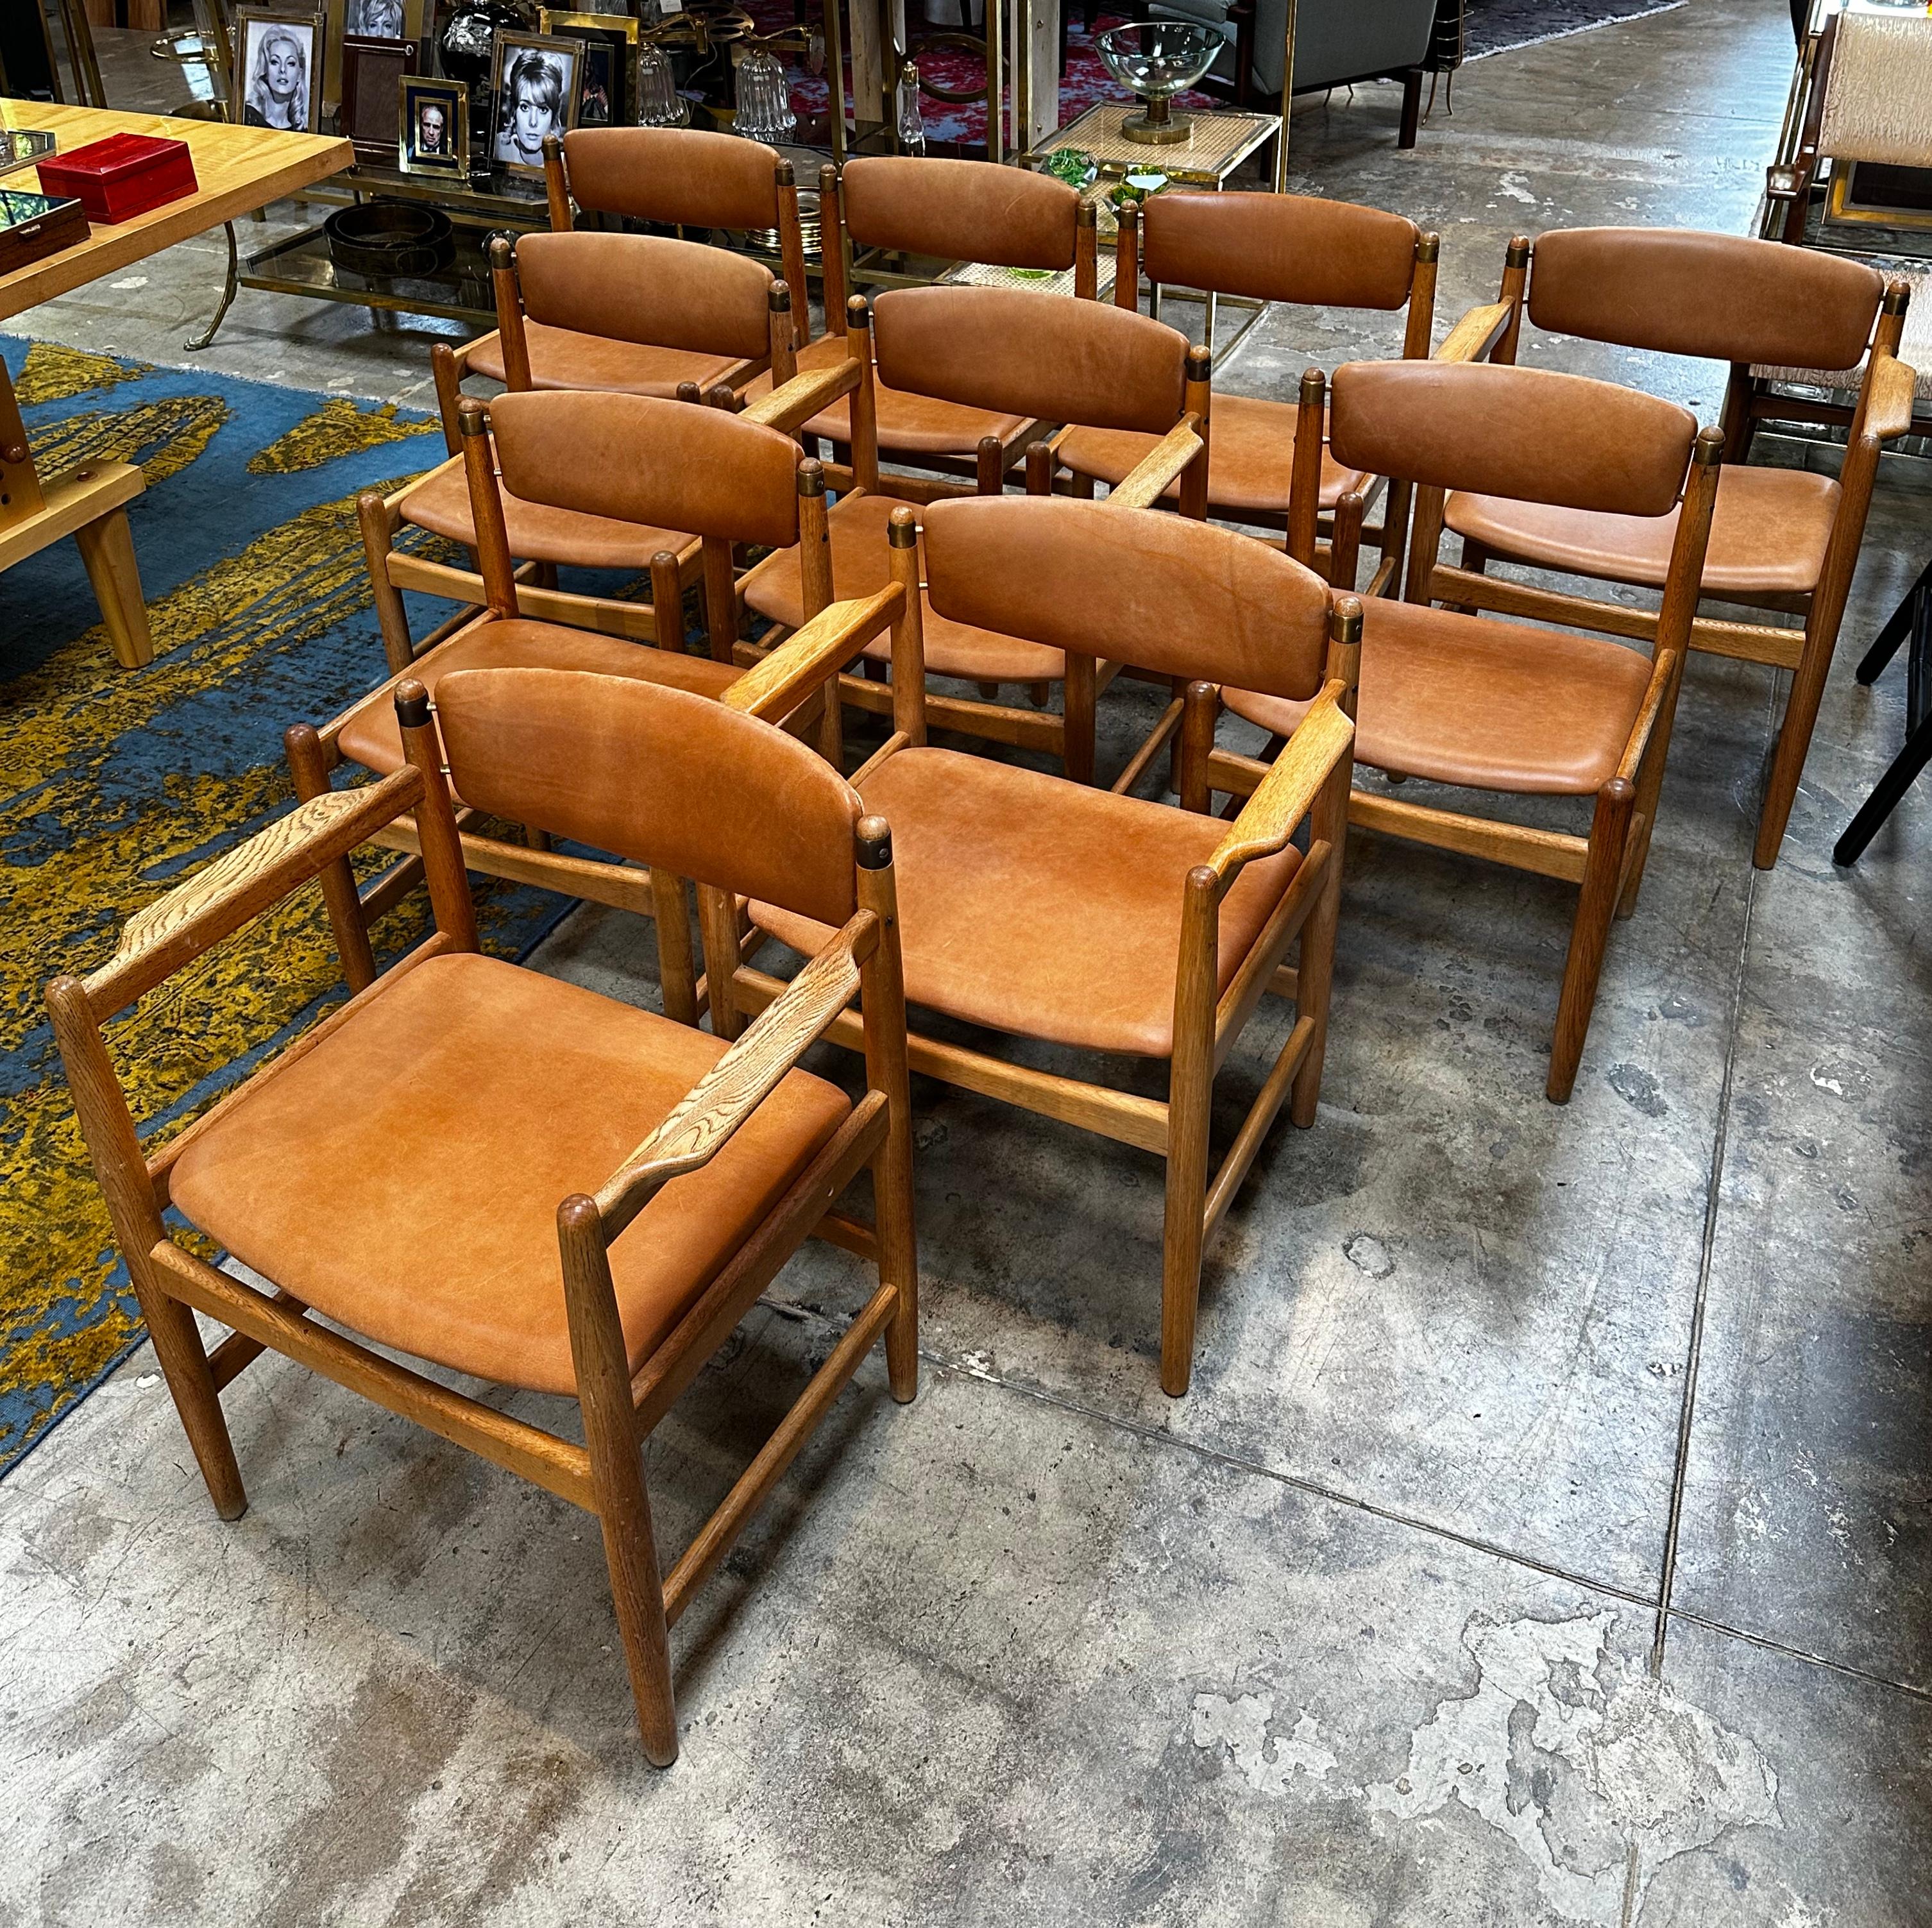 Dieser Satz von vier Stühlen des Modells 537 wurde von Borge Mogensen für Karl Andersson & Söner entworfen. Es wird seit 1955 produziert. Diese Stühle stammen aus der ersten Produktionsperiode. Das Design wurde von amerikanischen Shaker-Möbeln